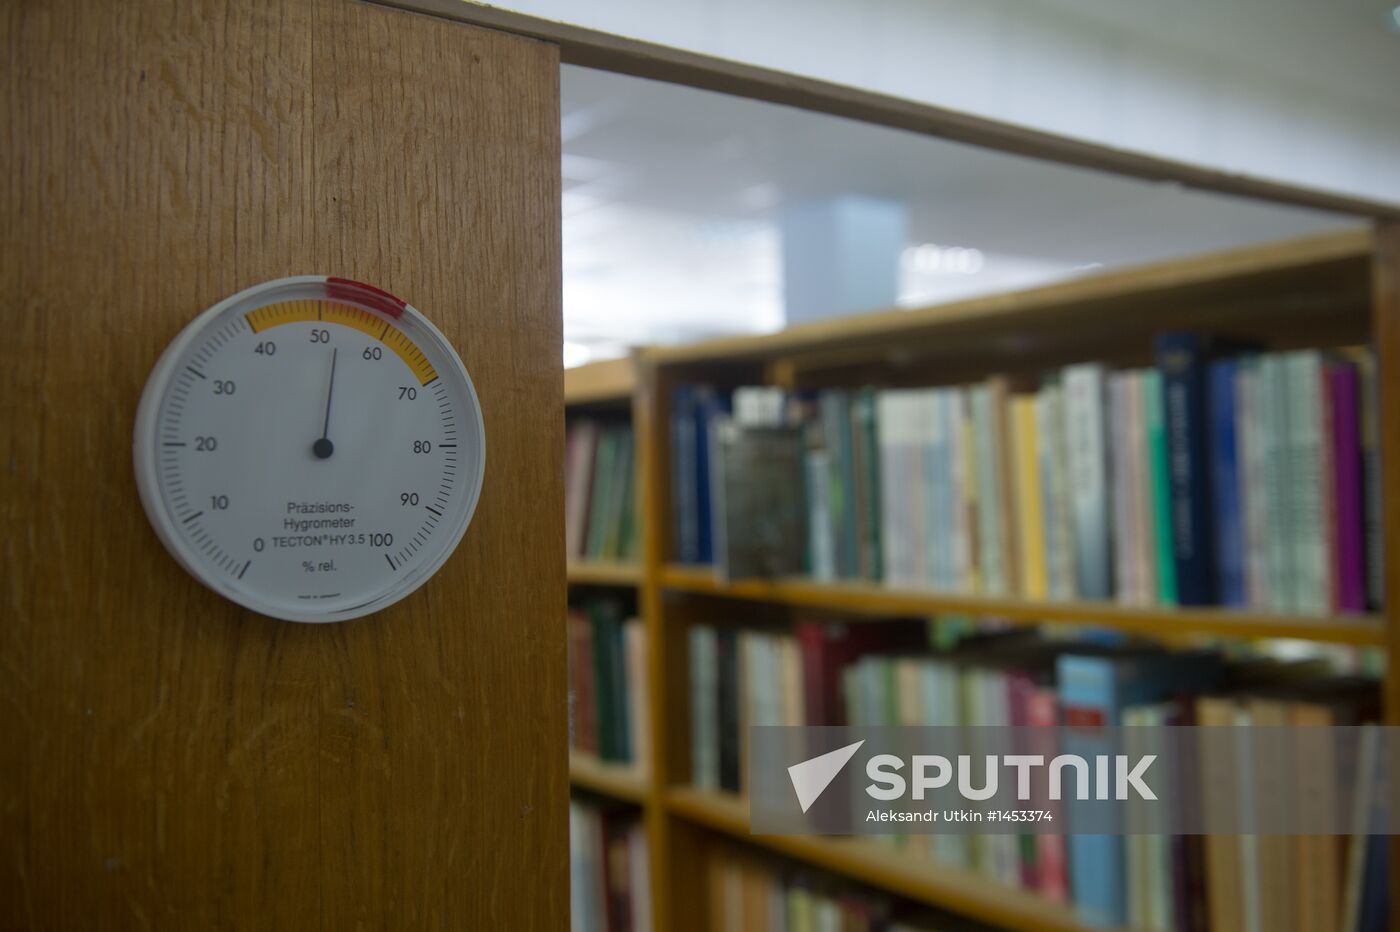 Work of Nekrasov Central Universal Scientific Library